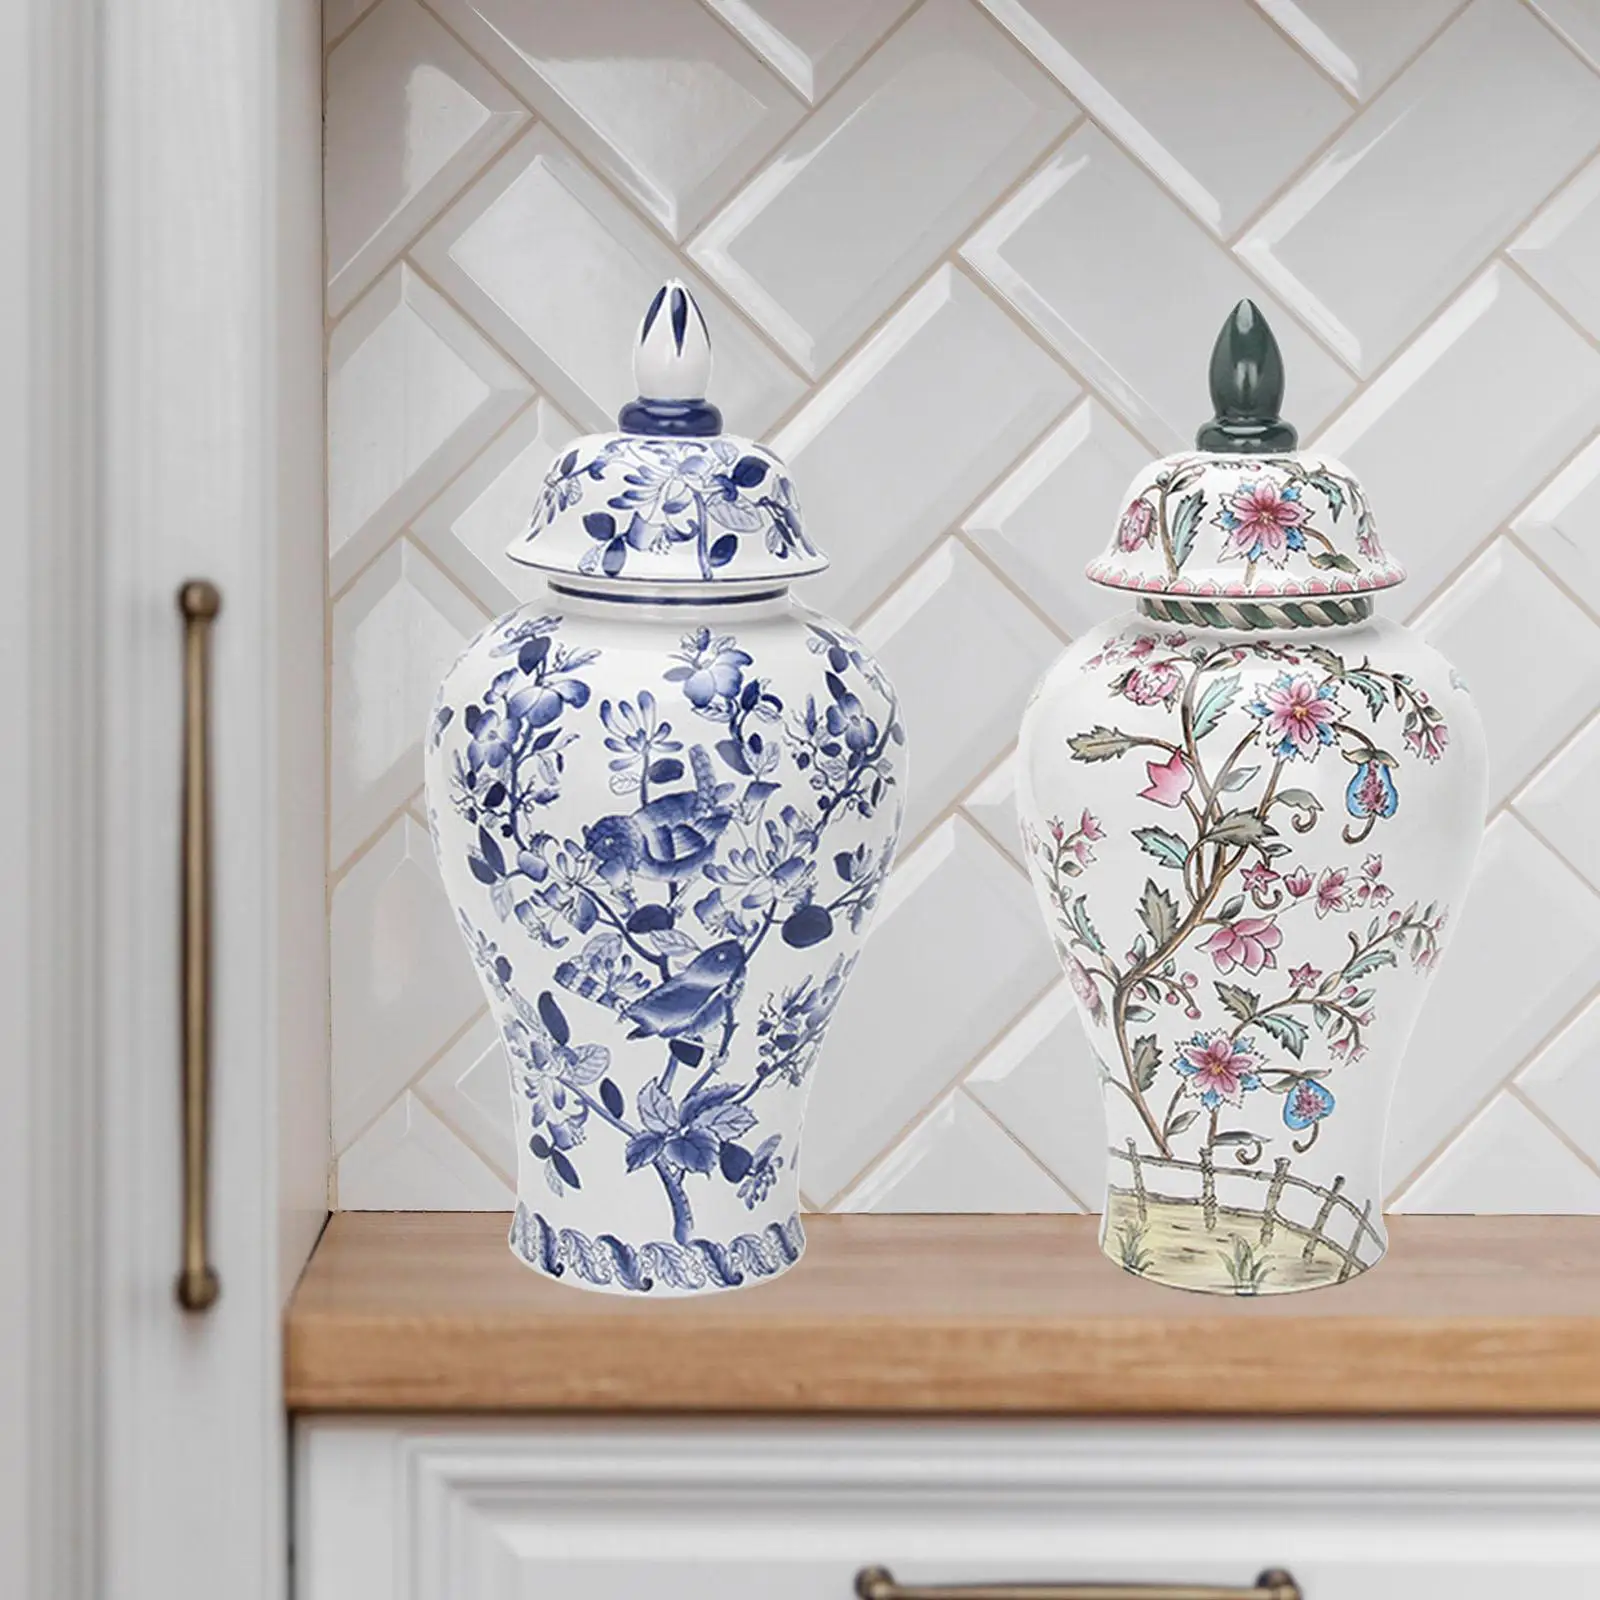 Porcelain Ginger Jar Temple Jar Handicraft Ceramic Flower Vase for Bedroom